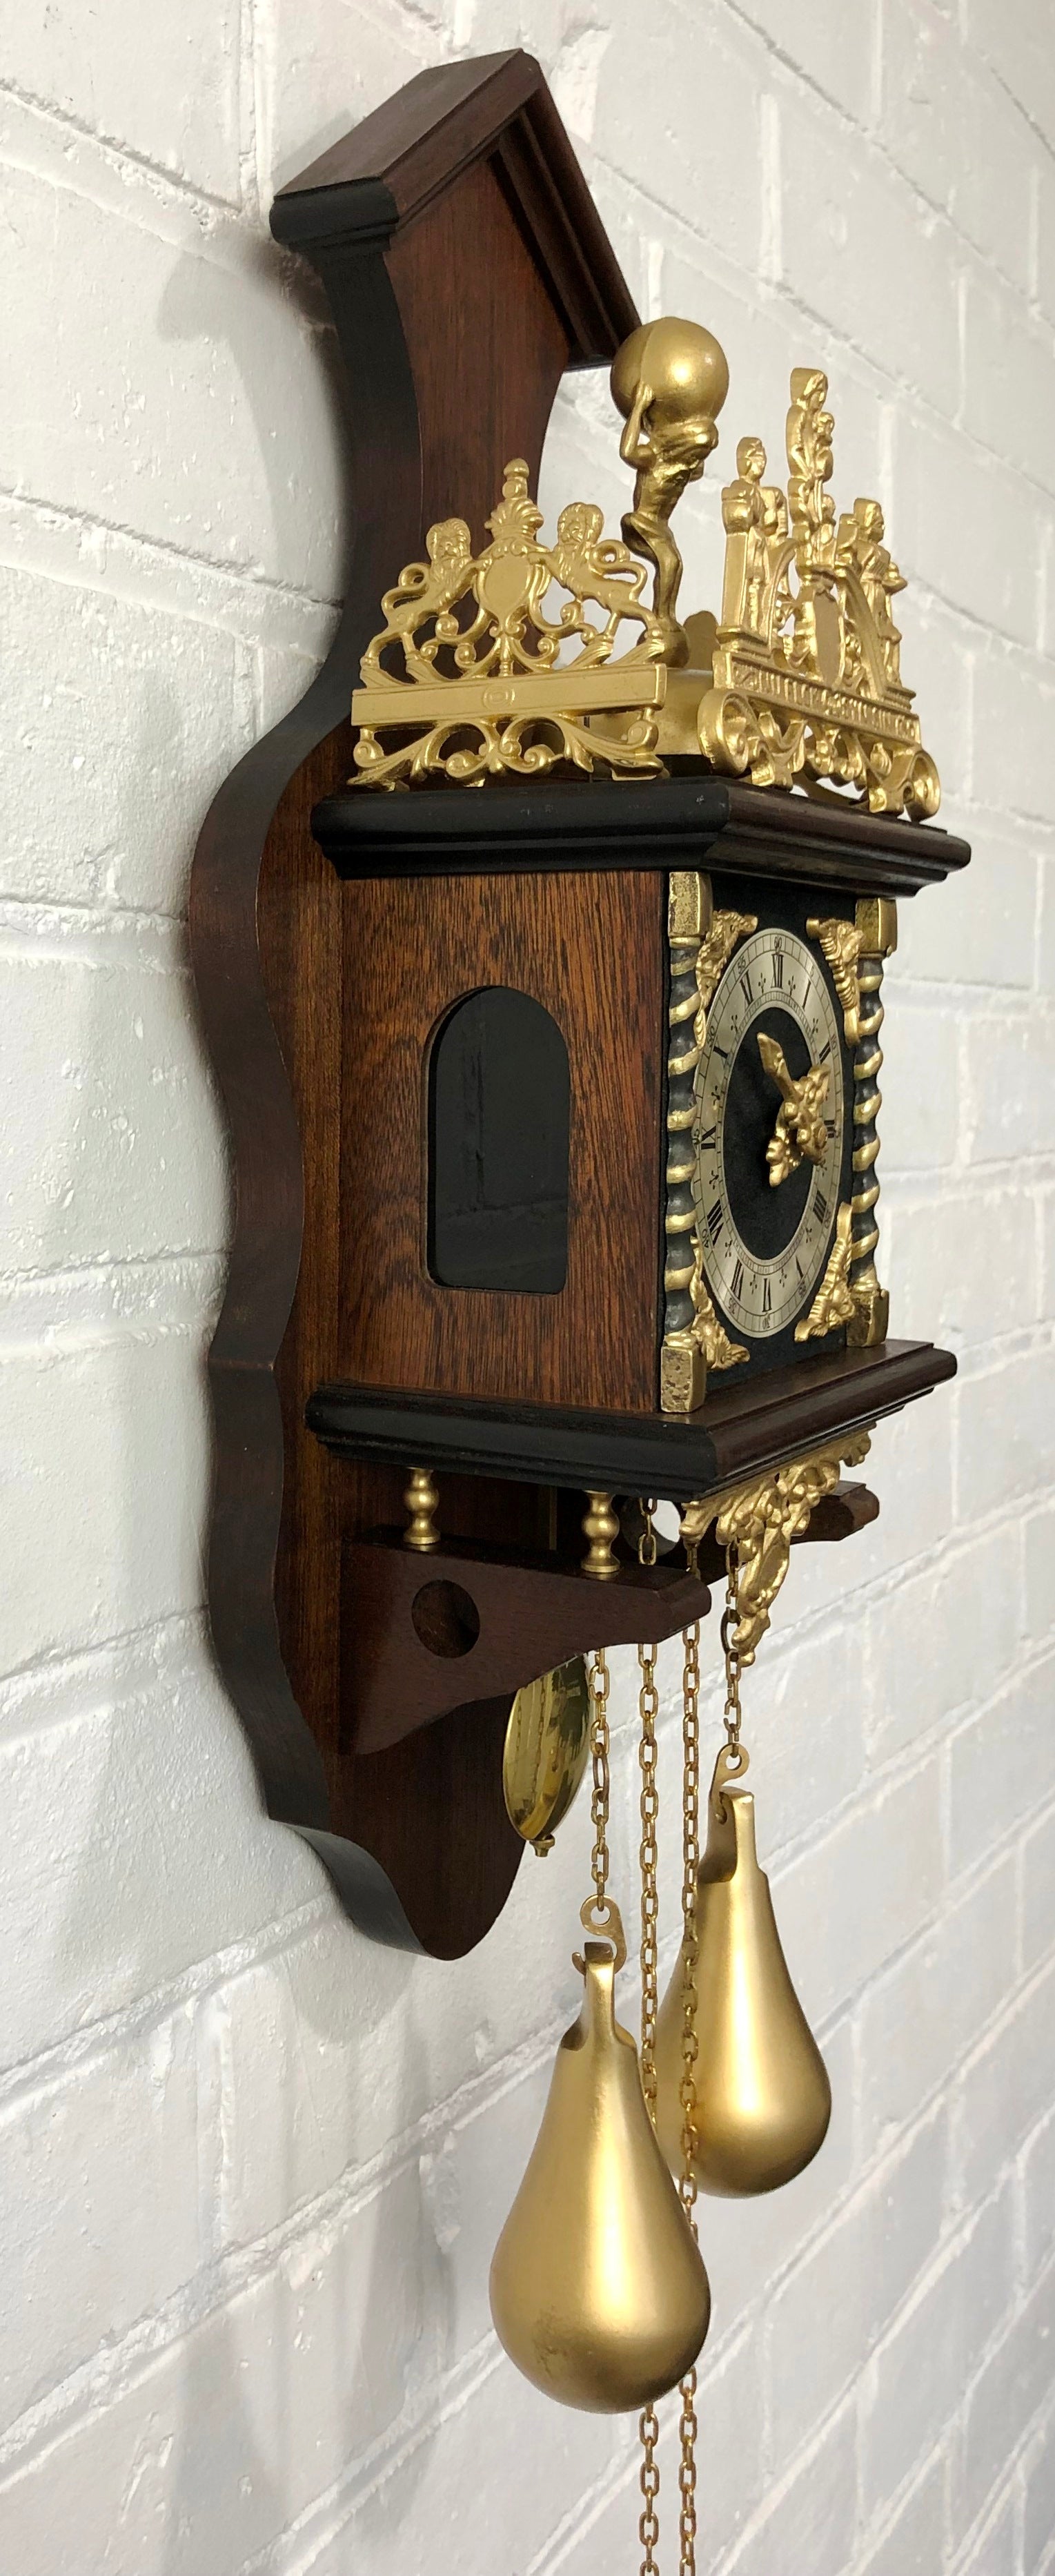 Vintage Atlas FHS Dutch Wall Clock | eXibit collection